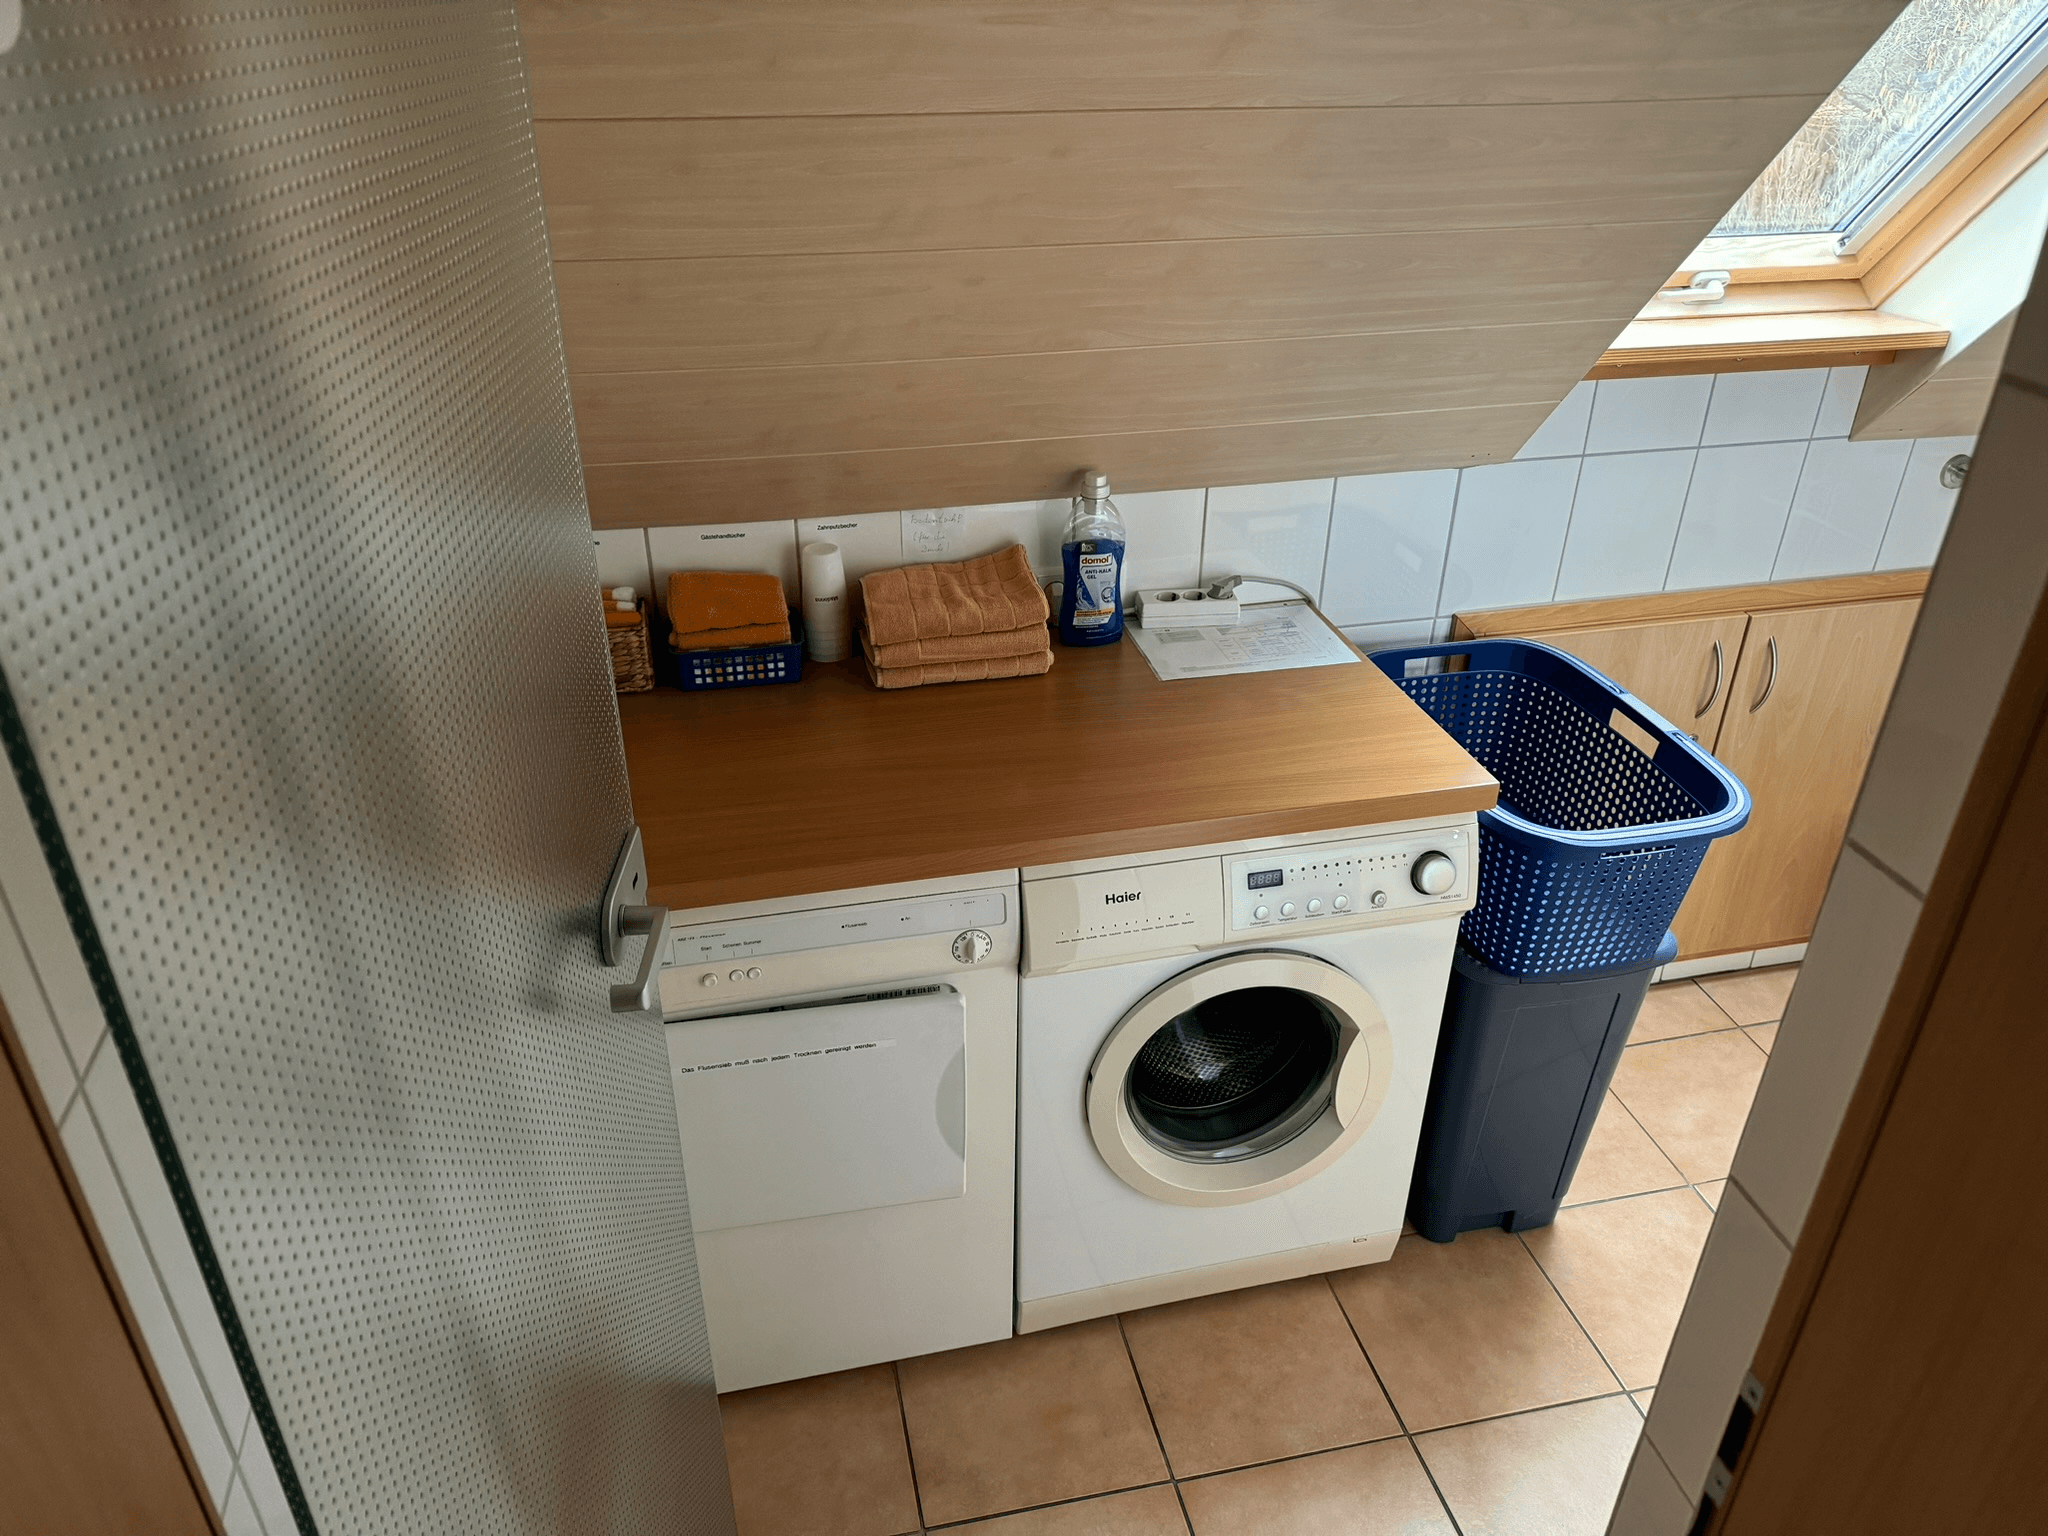 Waschmaschine und Trockner im Bad